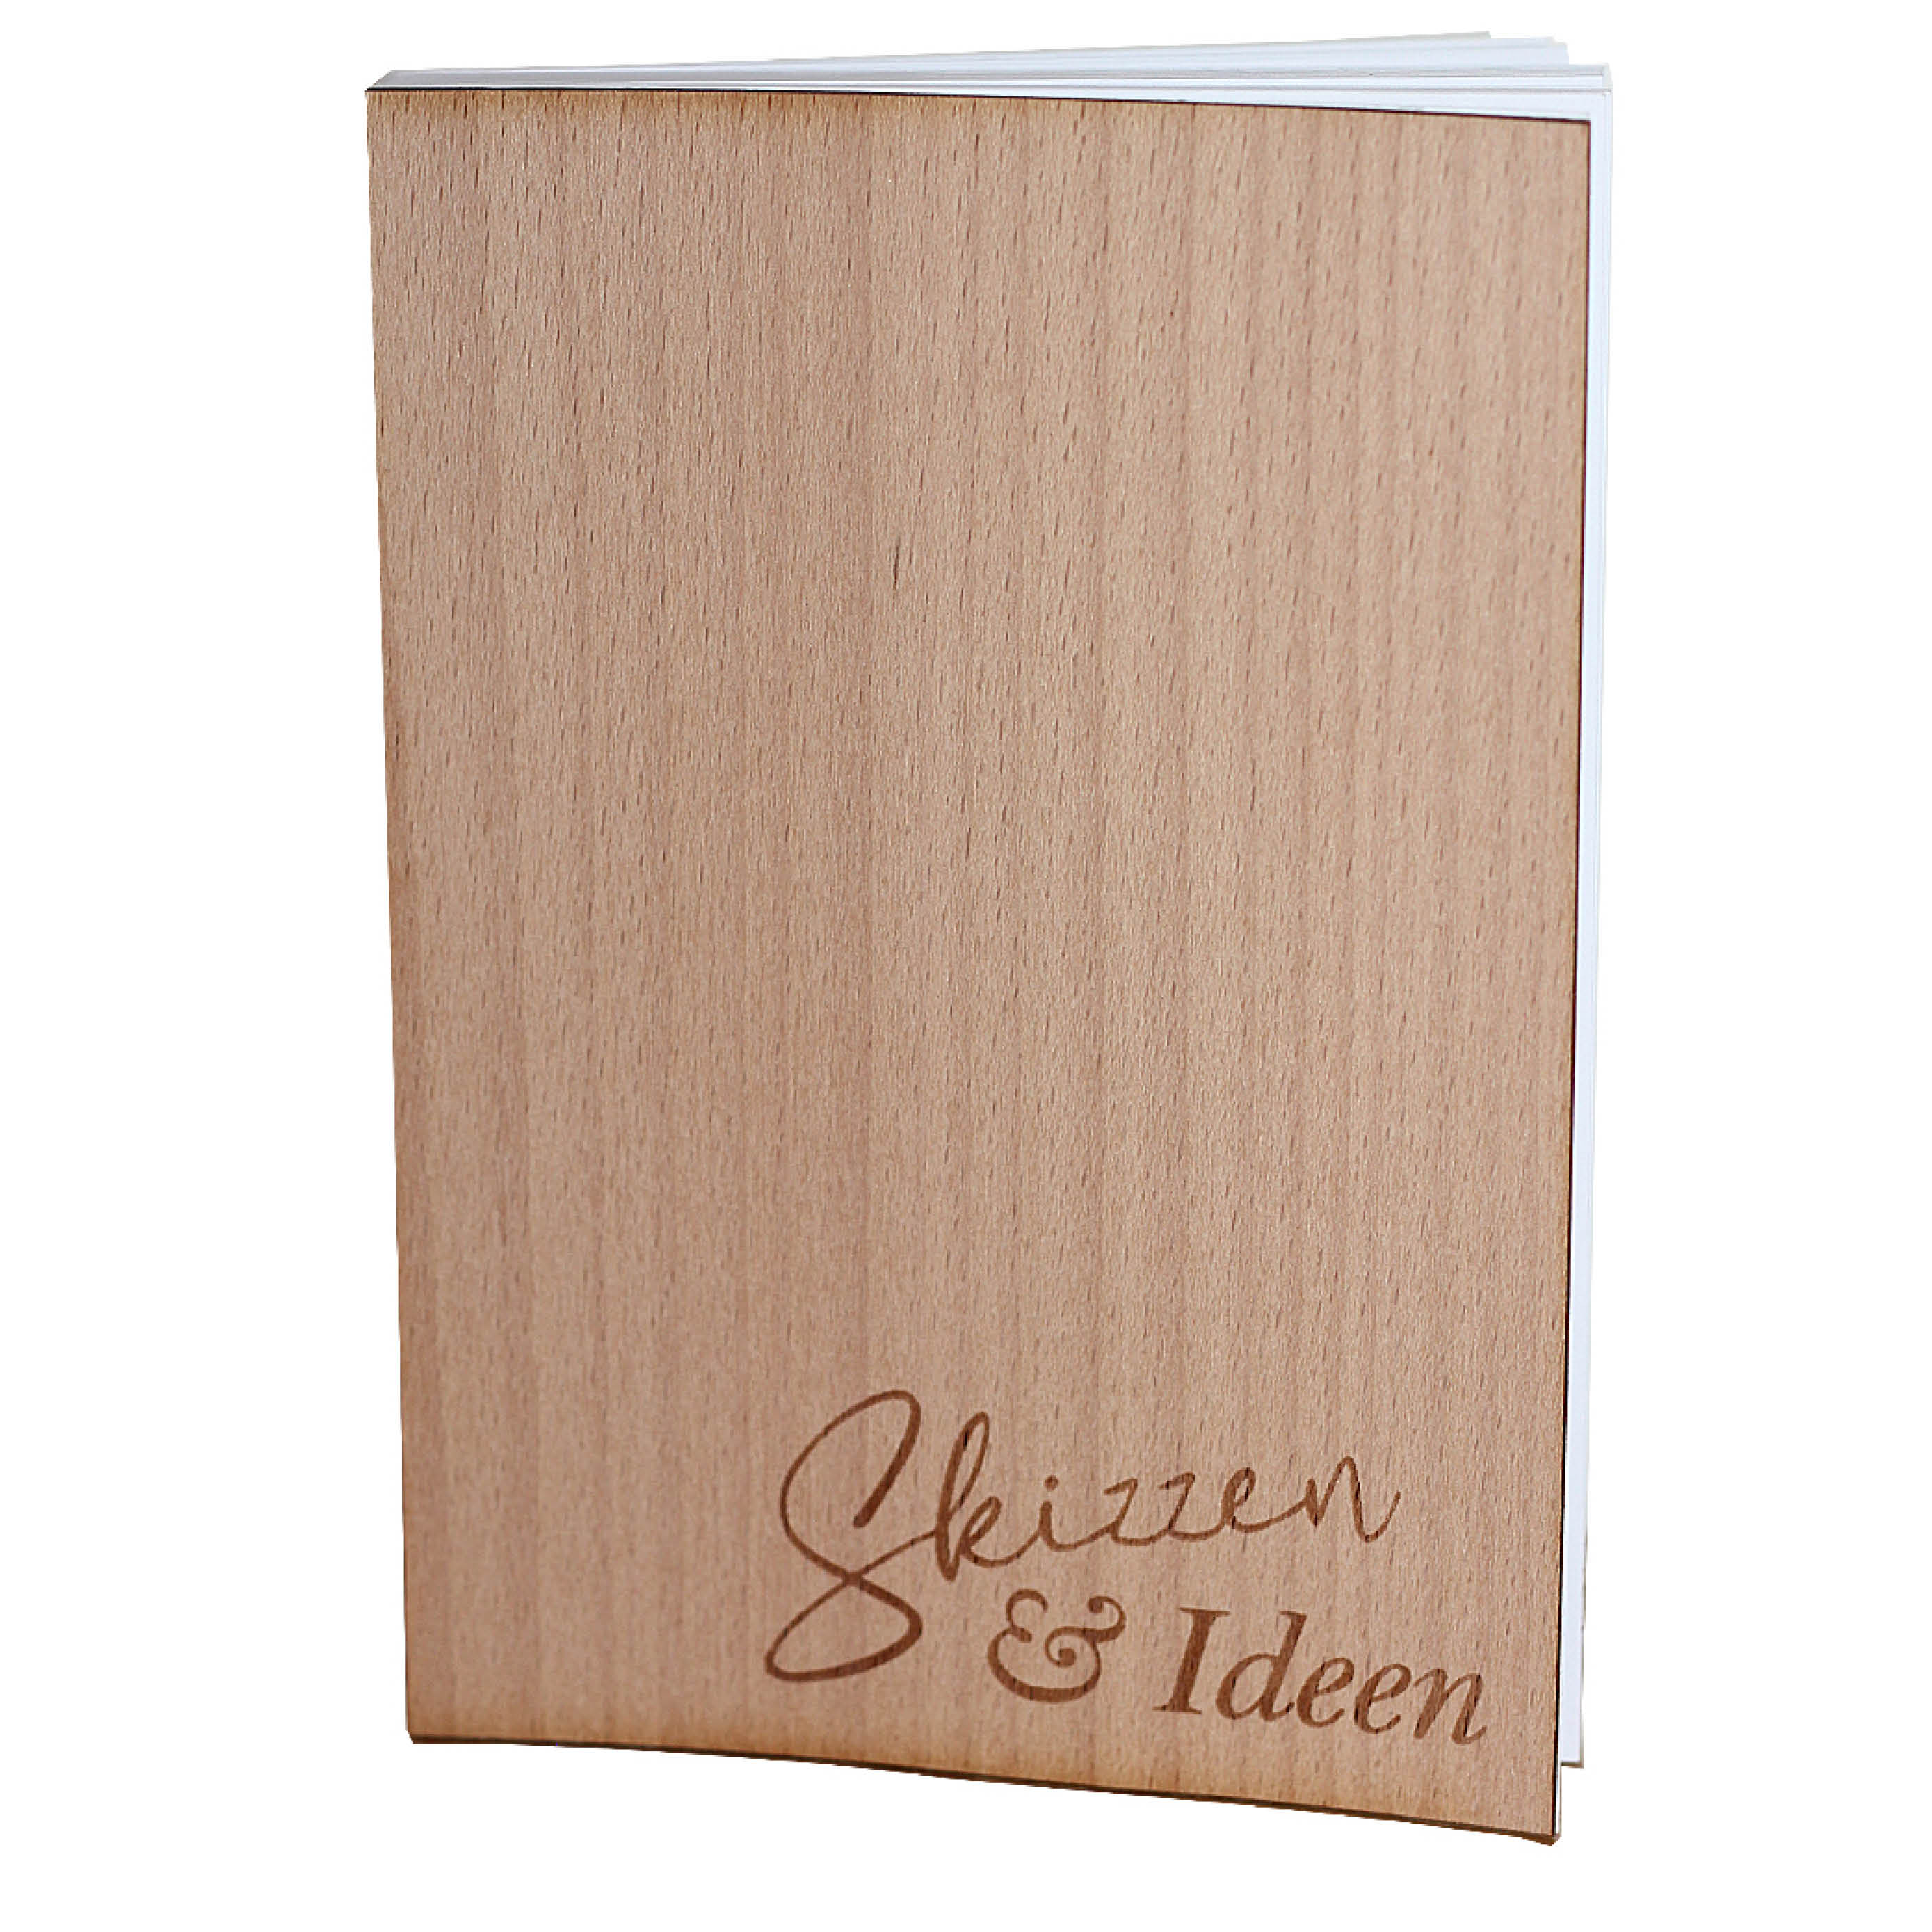 Notizbuch A6 mit Holzcover - Motiv "Skizzen & Ideen" - der Ort für Skizzen, Ideen, Rezepte, Erinnerungen, Wünsche, Ziele, Termine ...